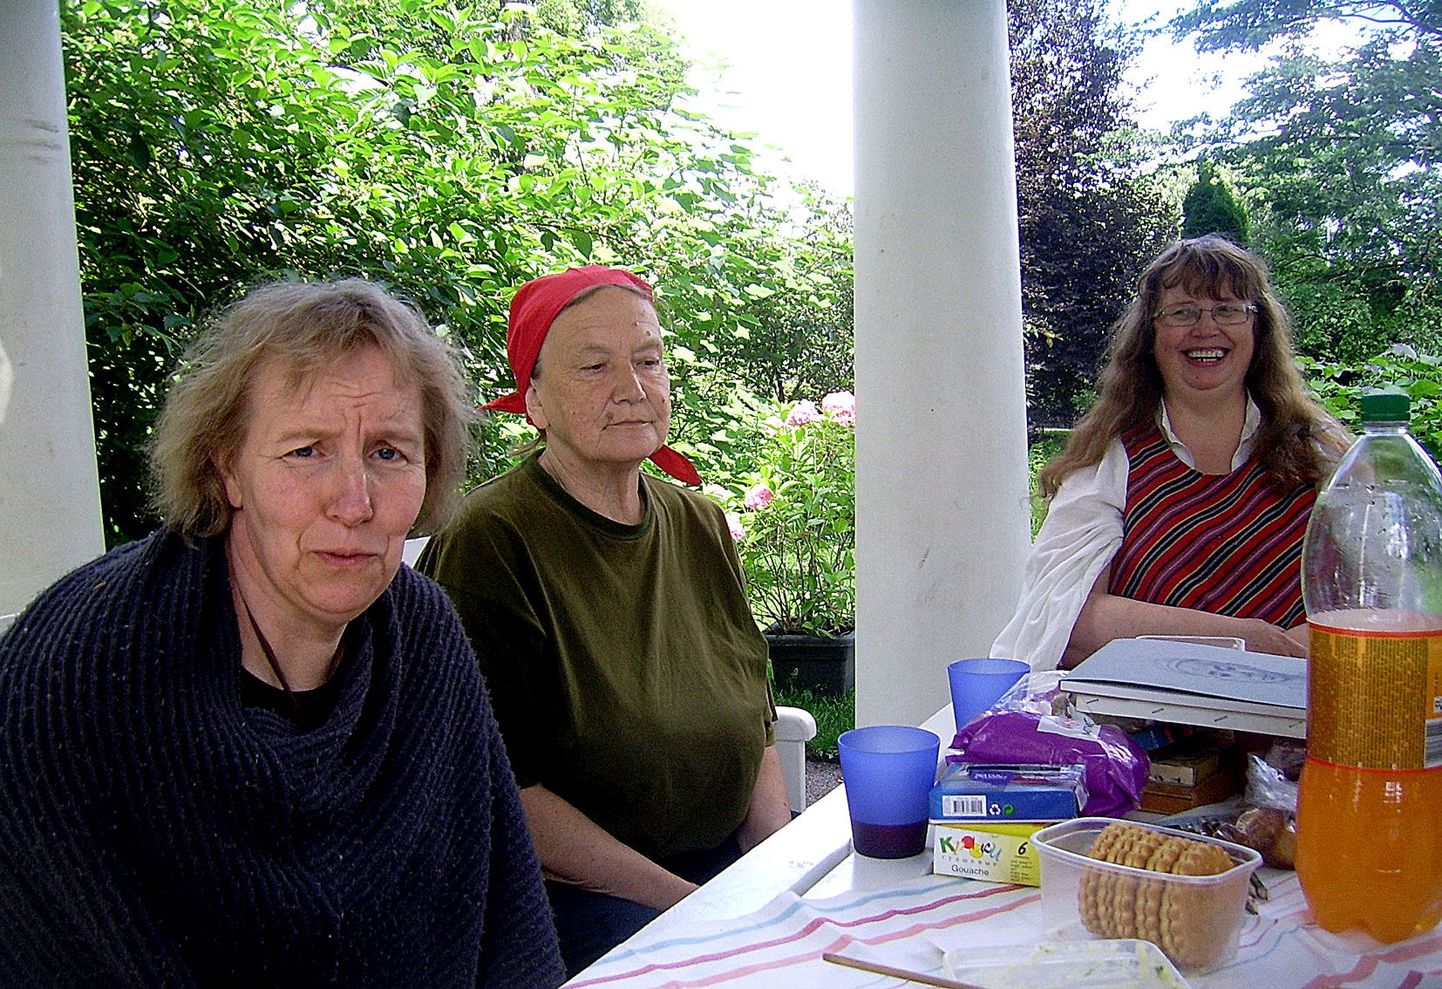 Suvine fotomälestus Tartumaa Puuetega Naiste Ühenduse kokkusaamiselt botaanikaaias, kus peeti piknik ning õpetaja Tiina Kuusi juhendamisel joonistas igaüks pildi. Sellele fotole on jäänud (vasakult) Piret Kivilo, Marje Aavoja ja Marju Reismaa.